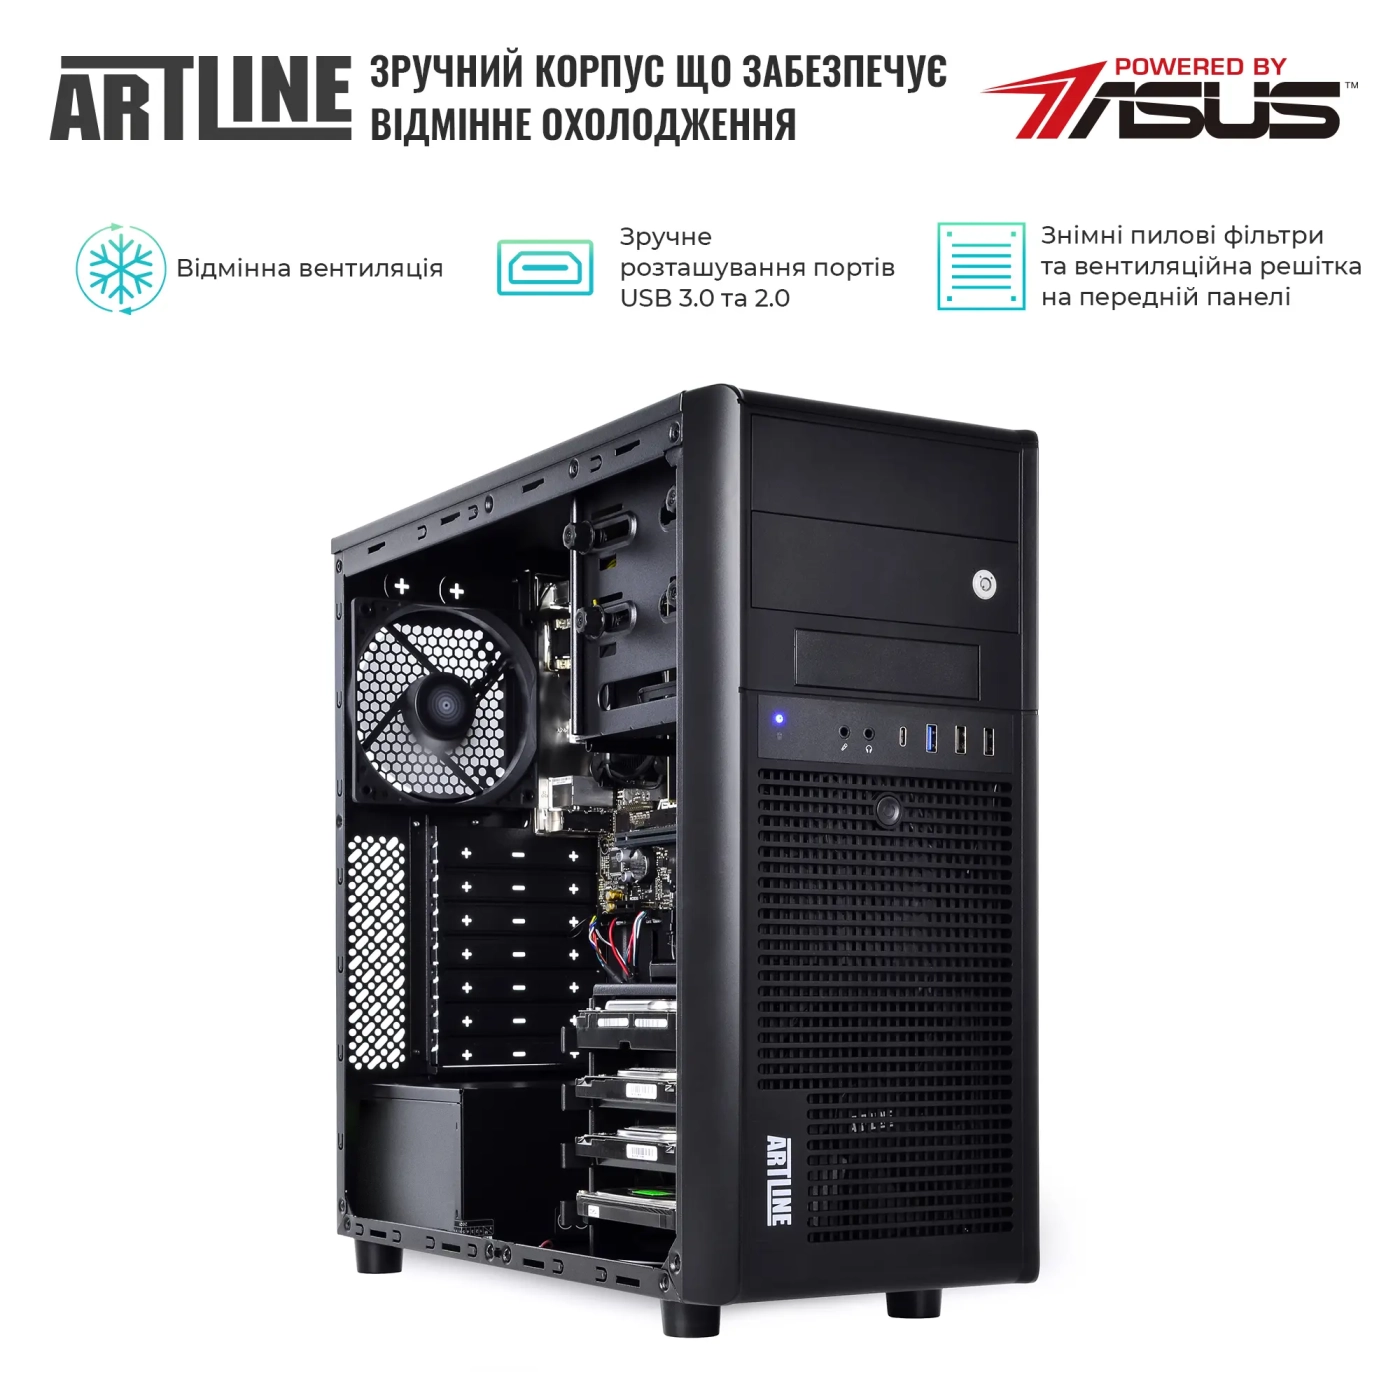 Купить Сервер ARTLINE Business T37v19 - фото 3